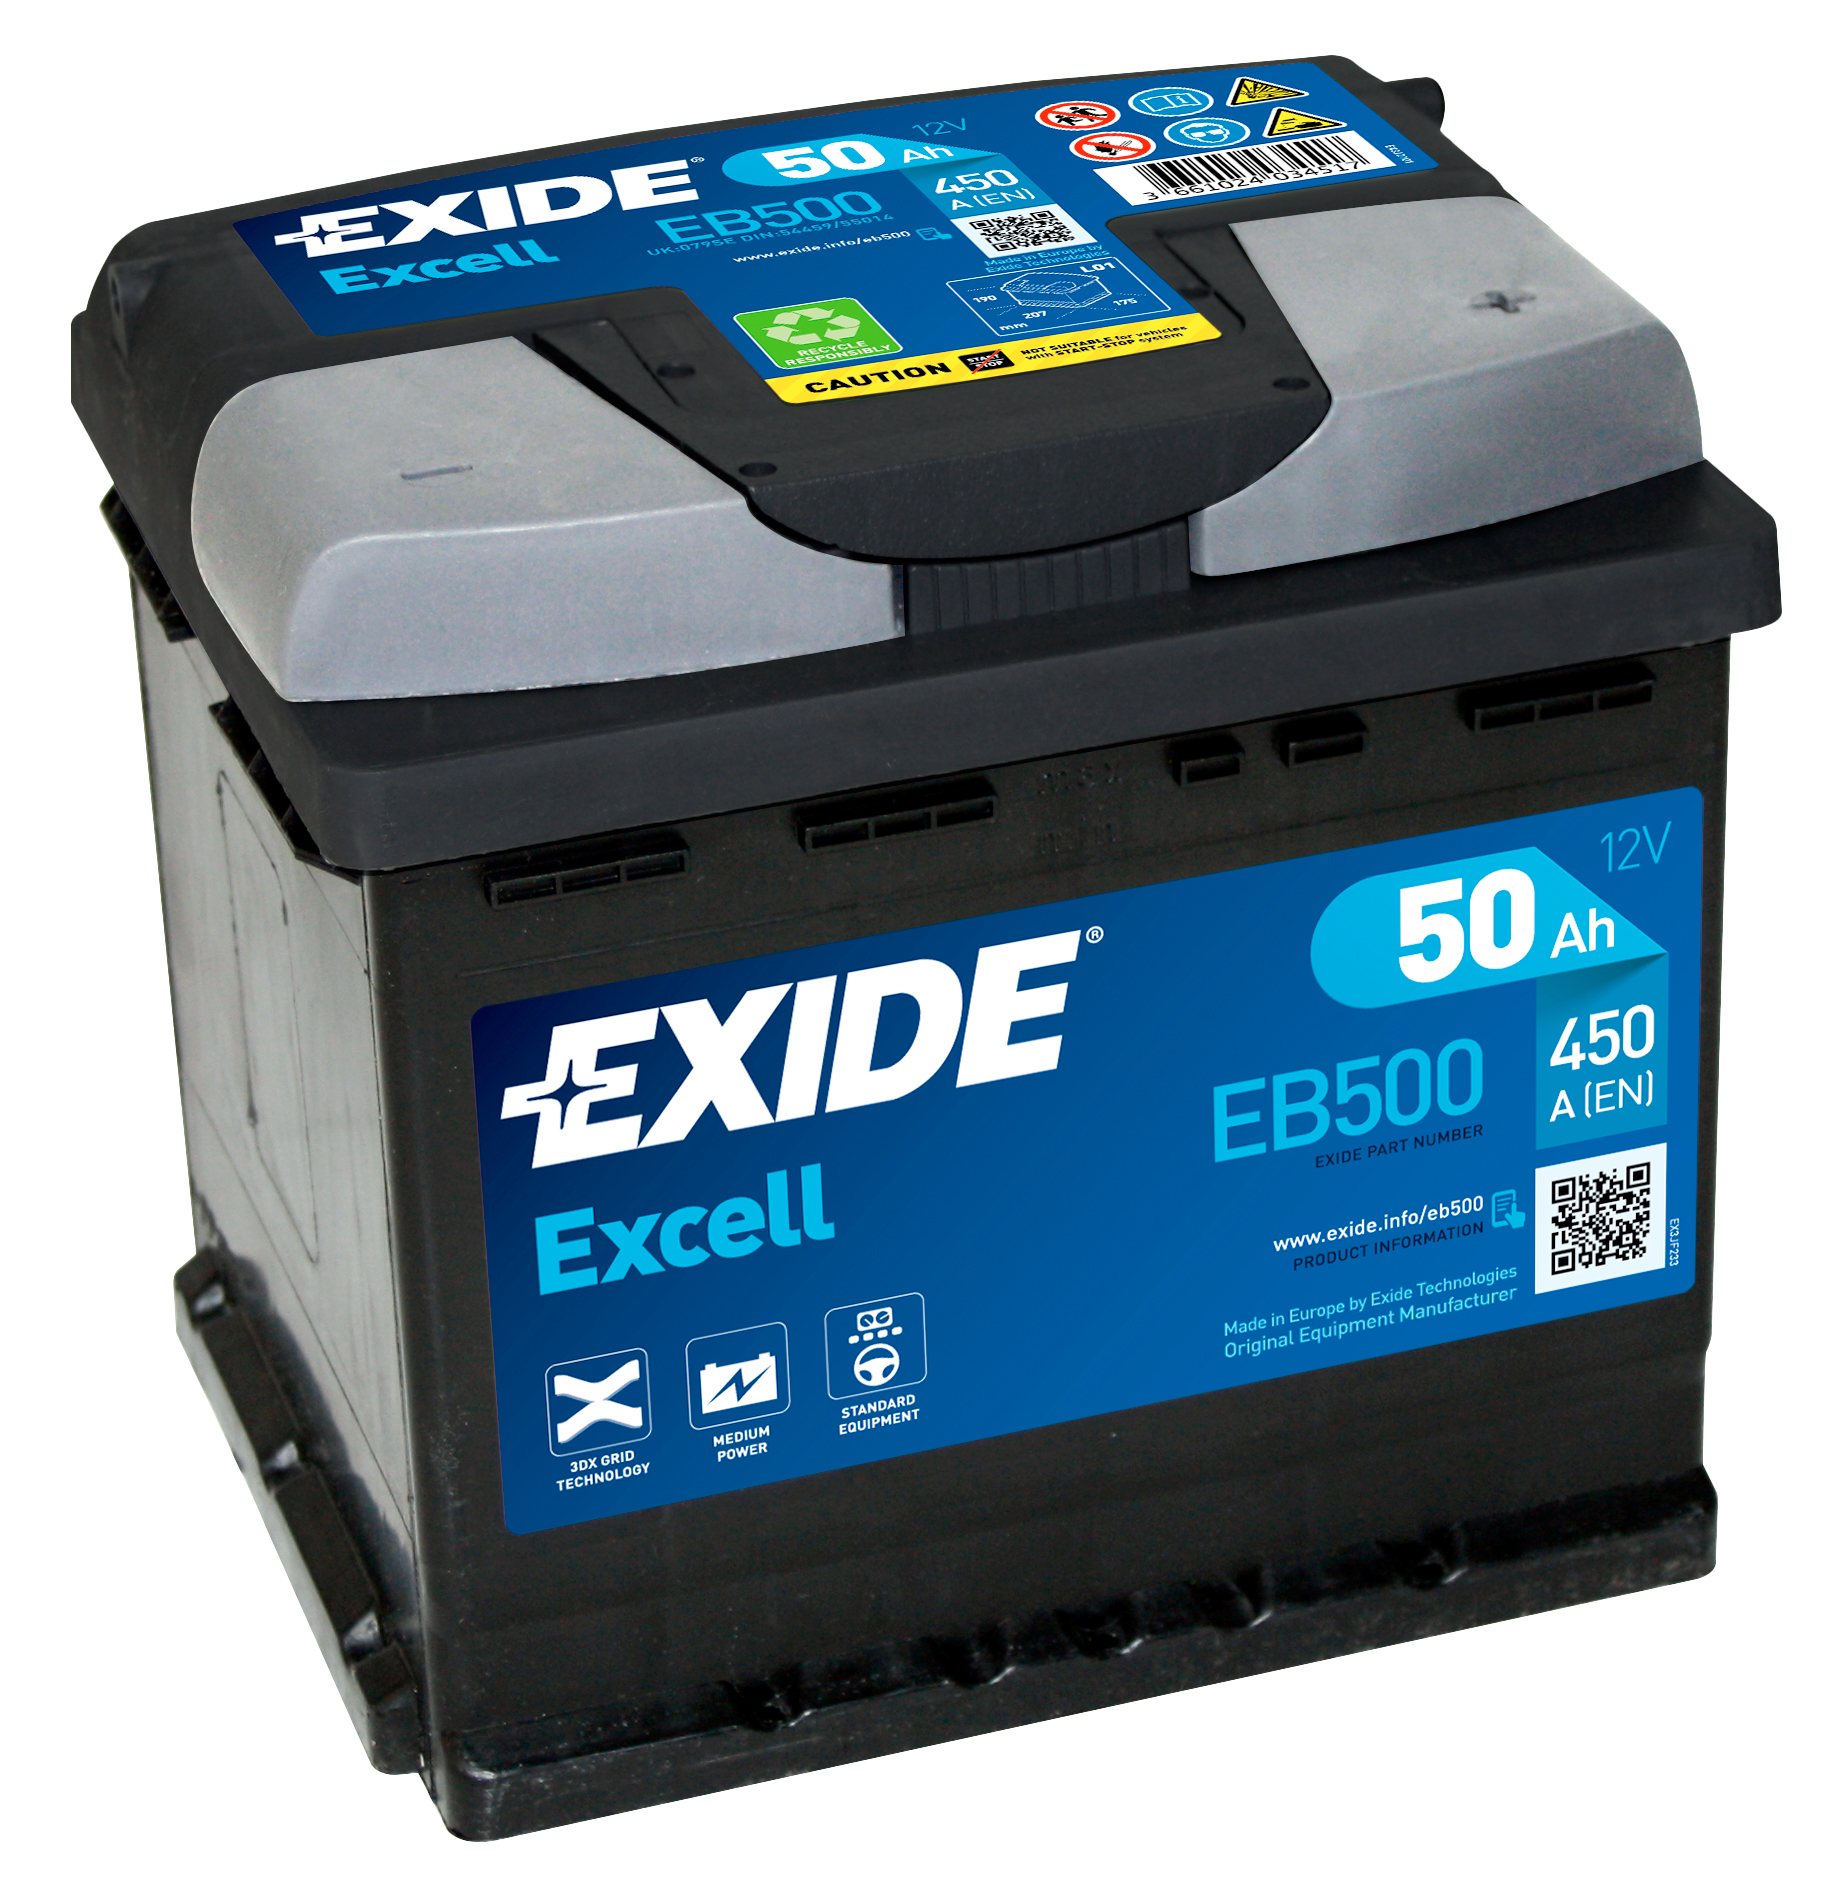 Аккумулятор EXIDE автомобильный EXCELL 50Ah 450A (EN) Кислотный EXIDE EB500